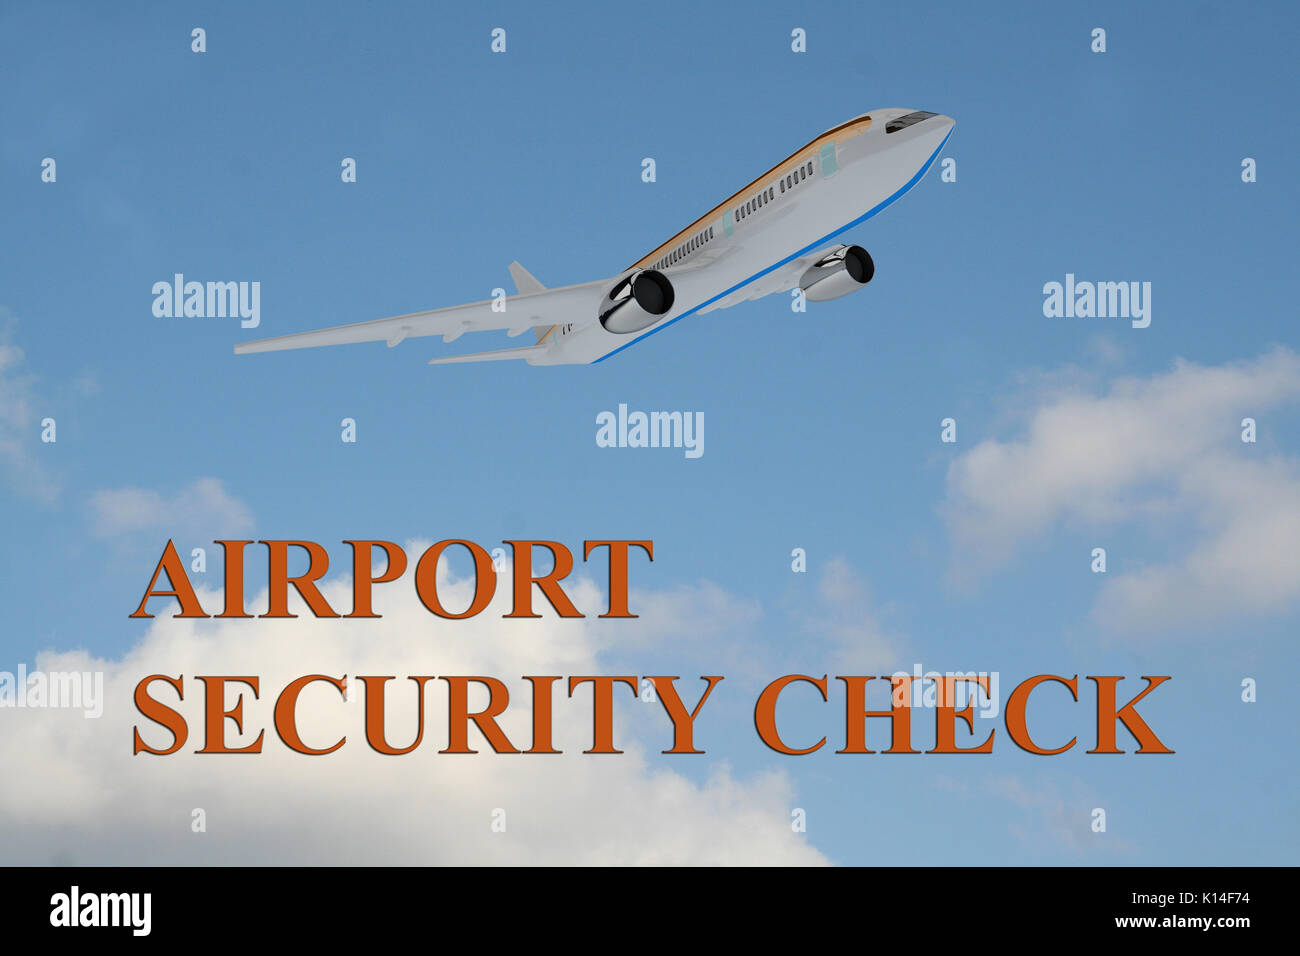 Render Abbildung: 'AIRPORT SECURITY CHECK" Titel an bewölkten Himmel als Hintergrund, die im Rahmen eines Flugzeuges, das ausgeschaltet ist. Stockfoto